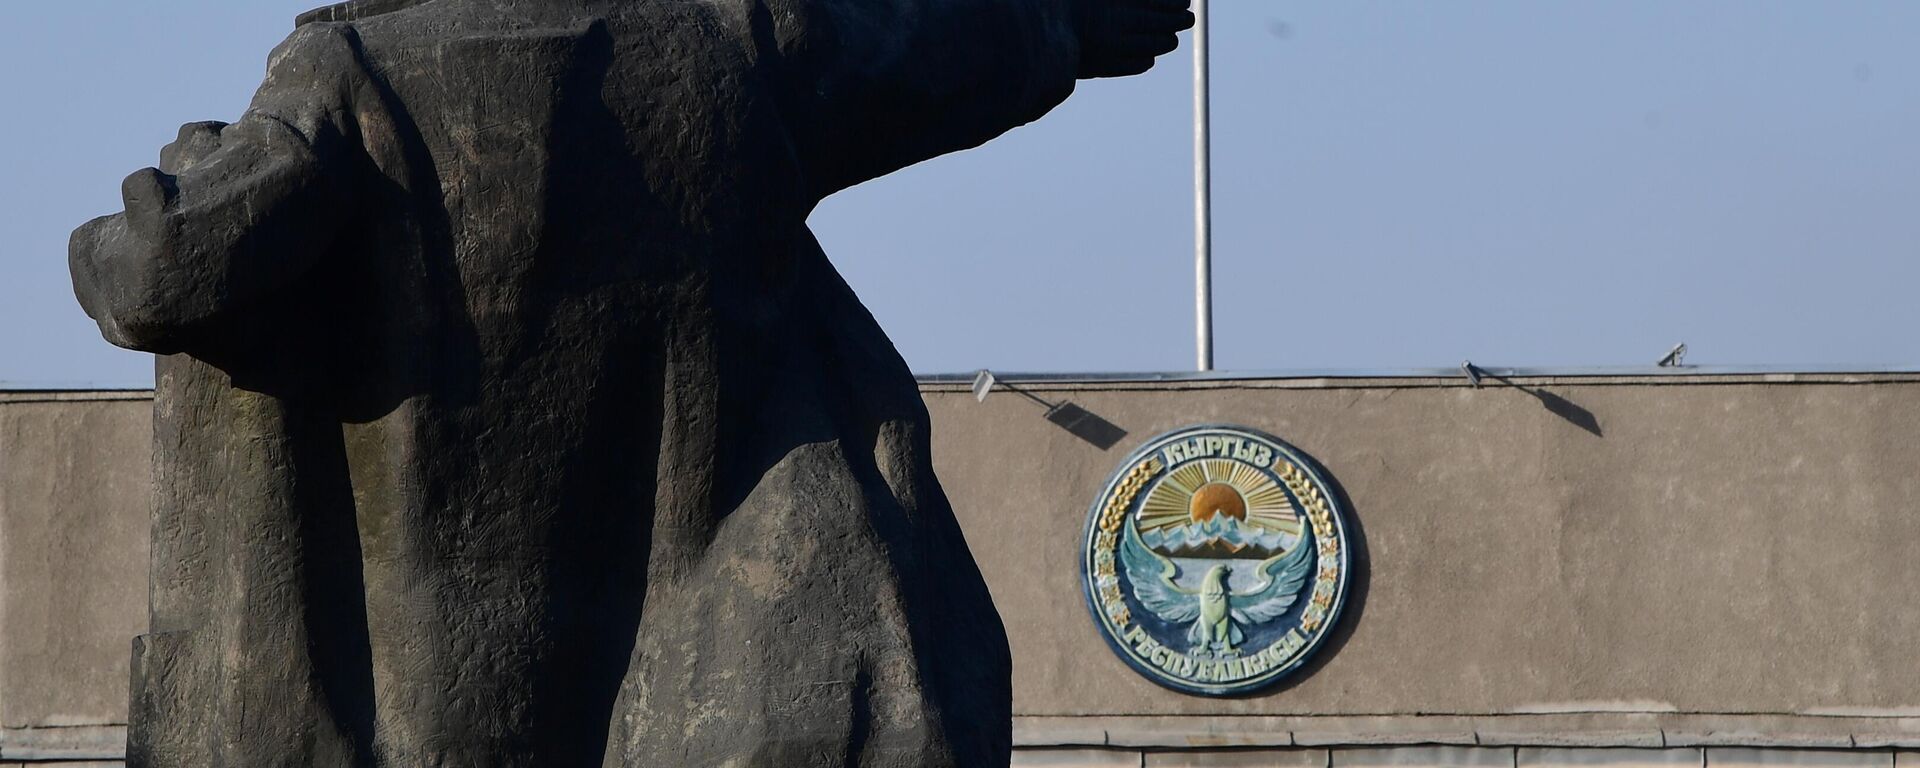 Споменик Лењину на Старом тргу у Бишкеку - Sputnik Србија, 1920, 18.09.2022